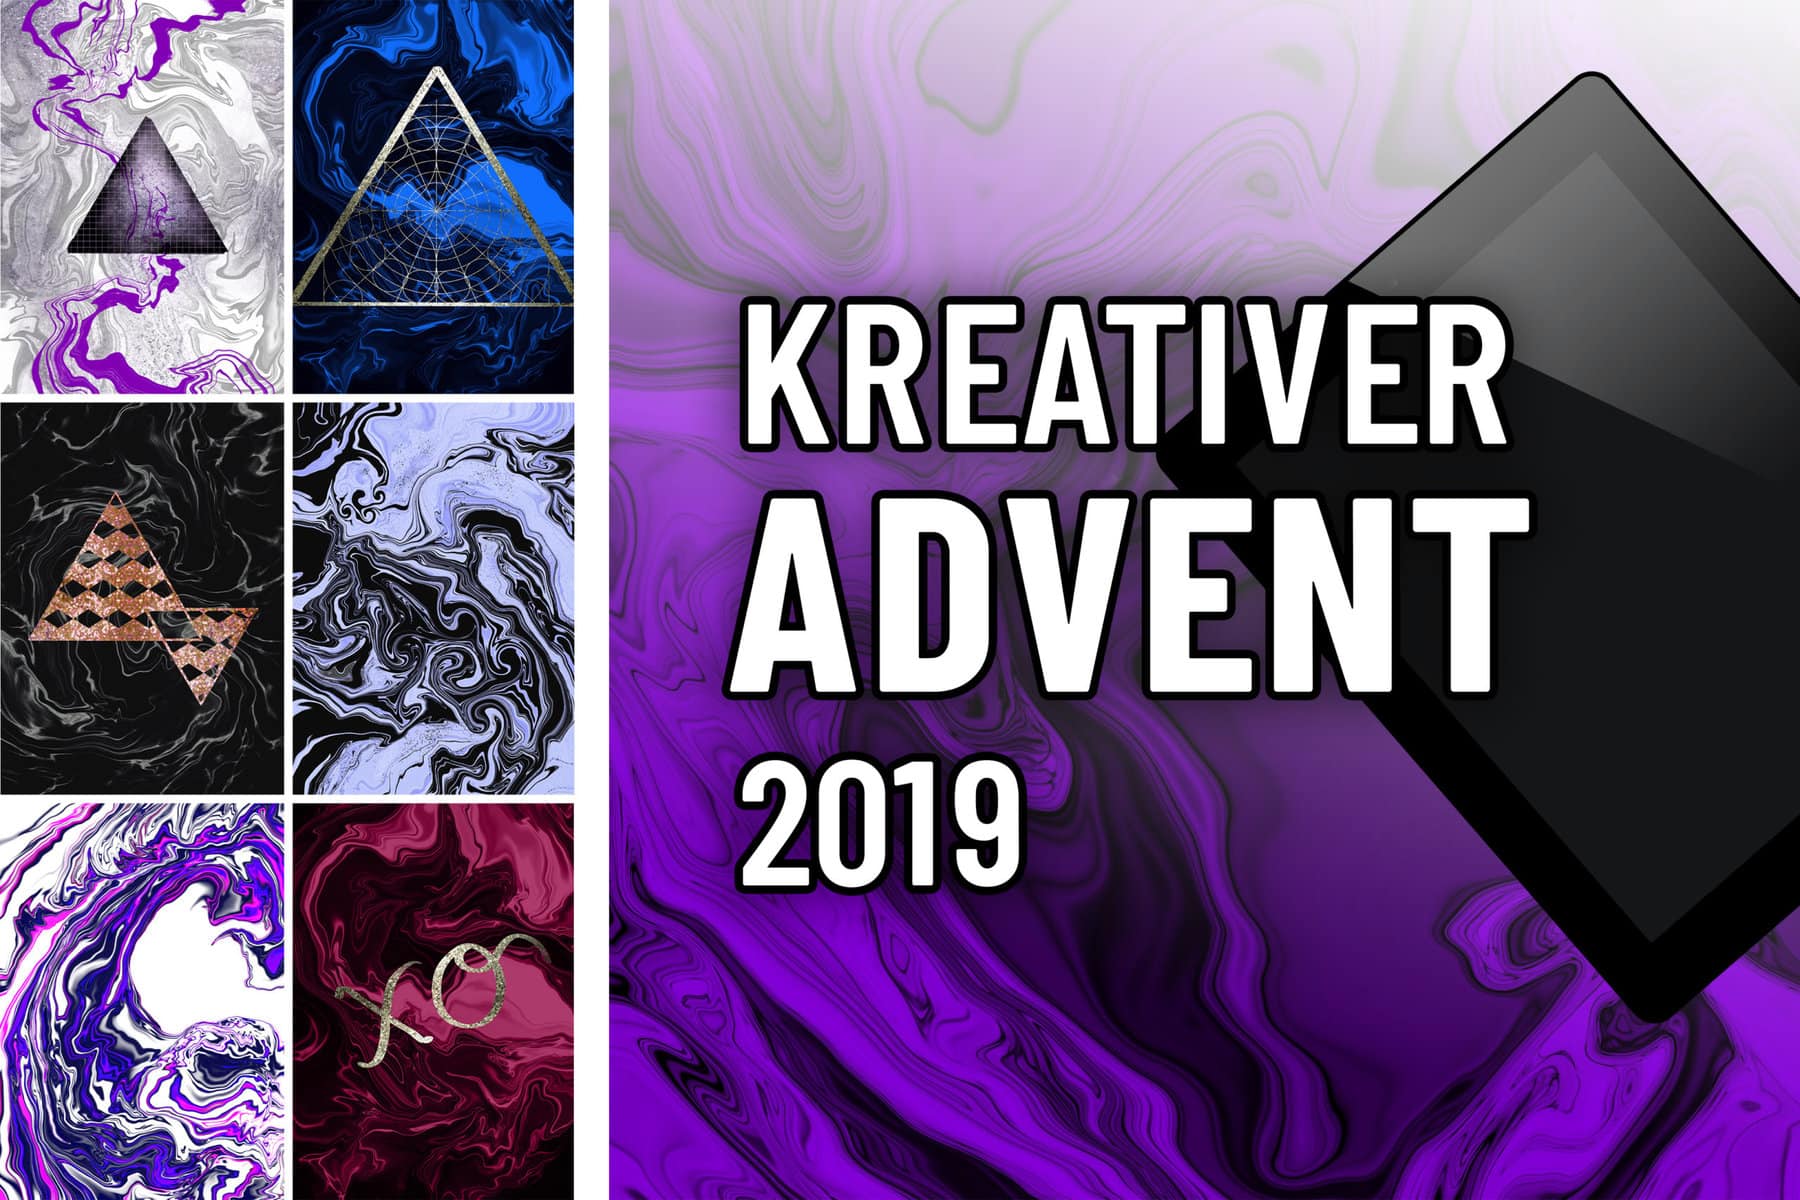 Kreativer Adventskalender 2019 – Challenge Auswertung: 24+ Bilder